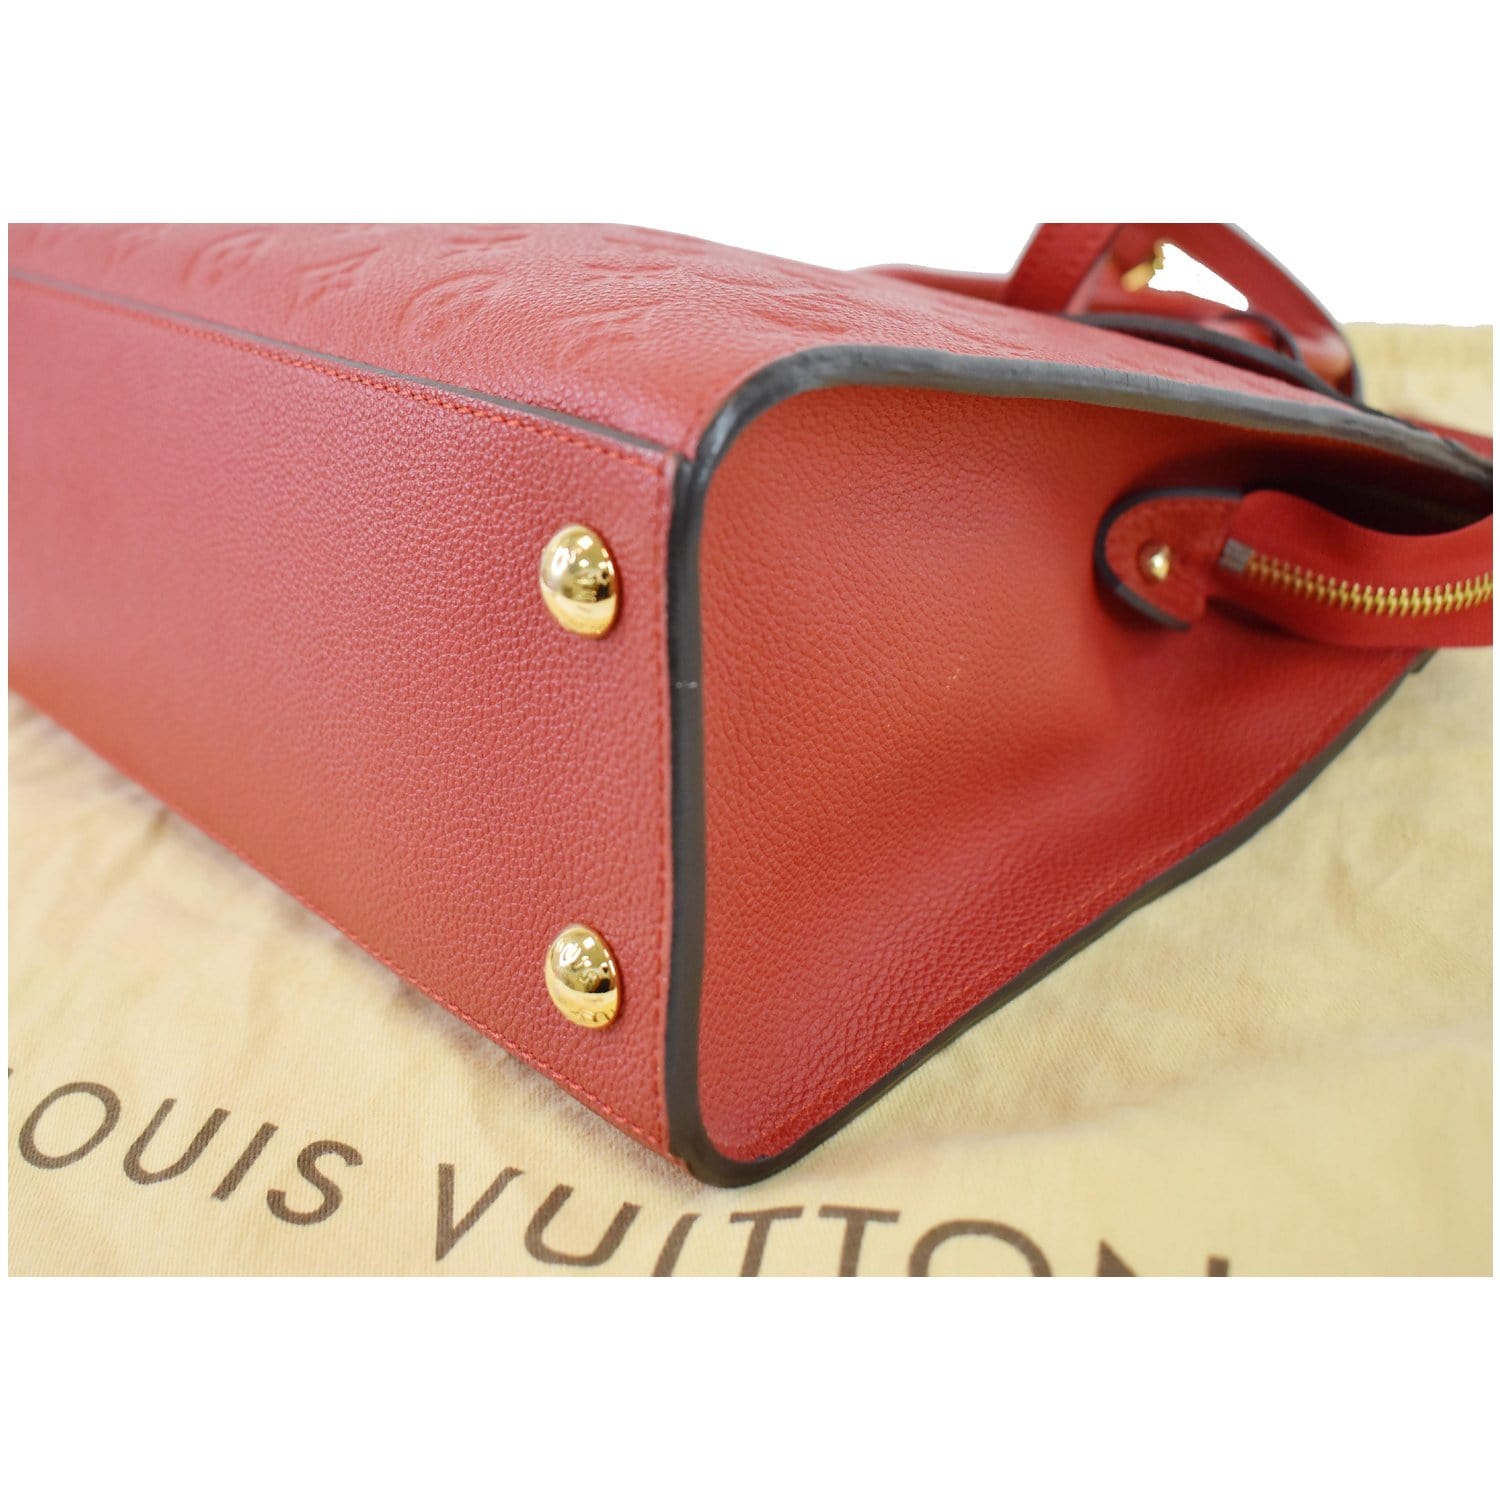 LOUIS VUITTON Louis Vuitton Leather LV Pont Neuf Shoulder Bag M56456 Brown  Women's